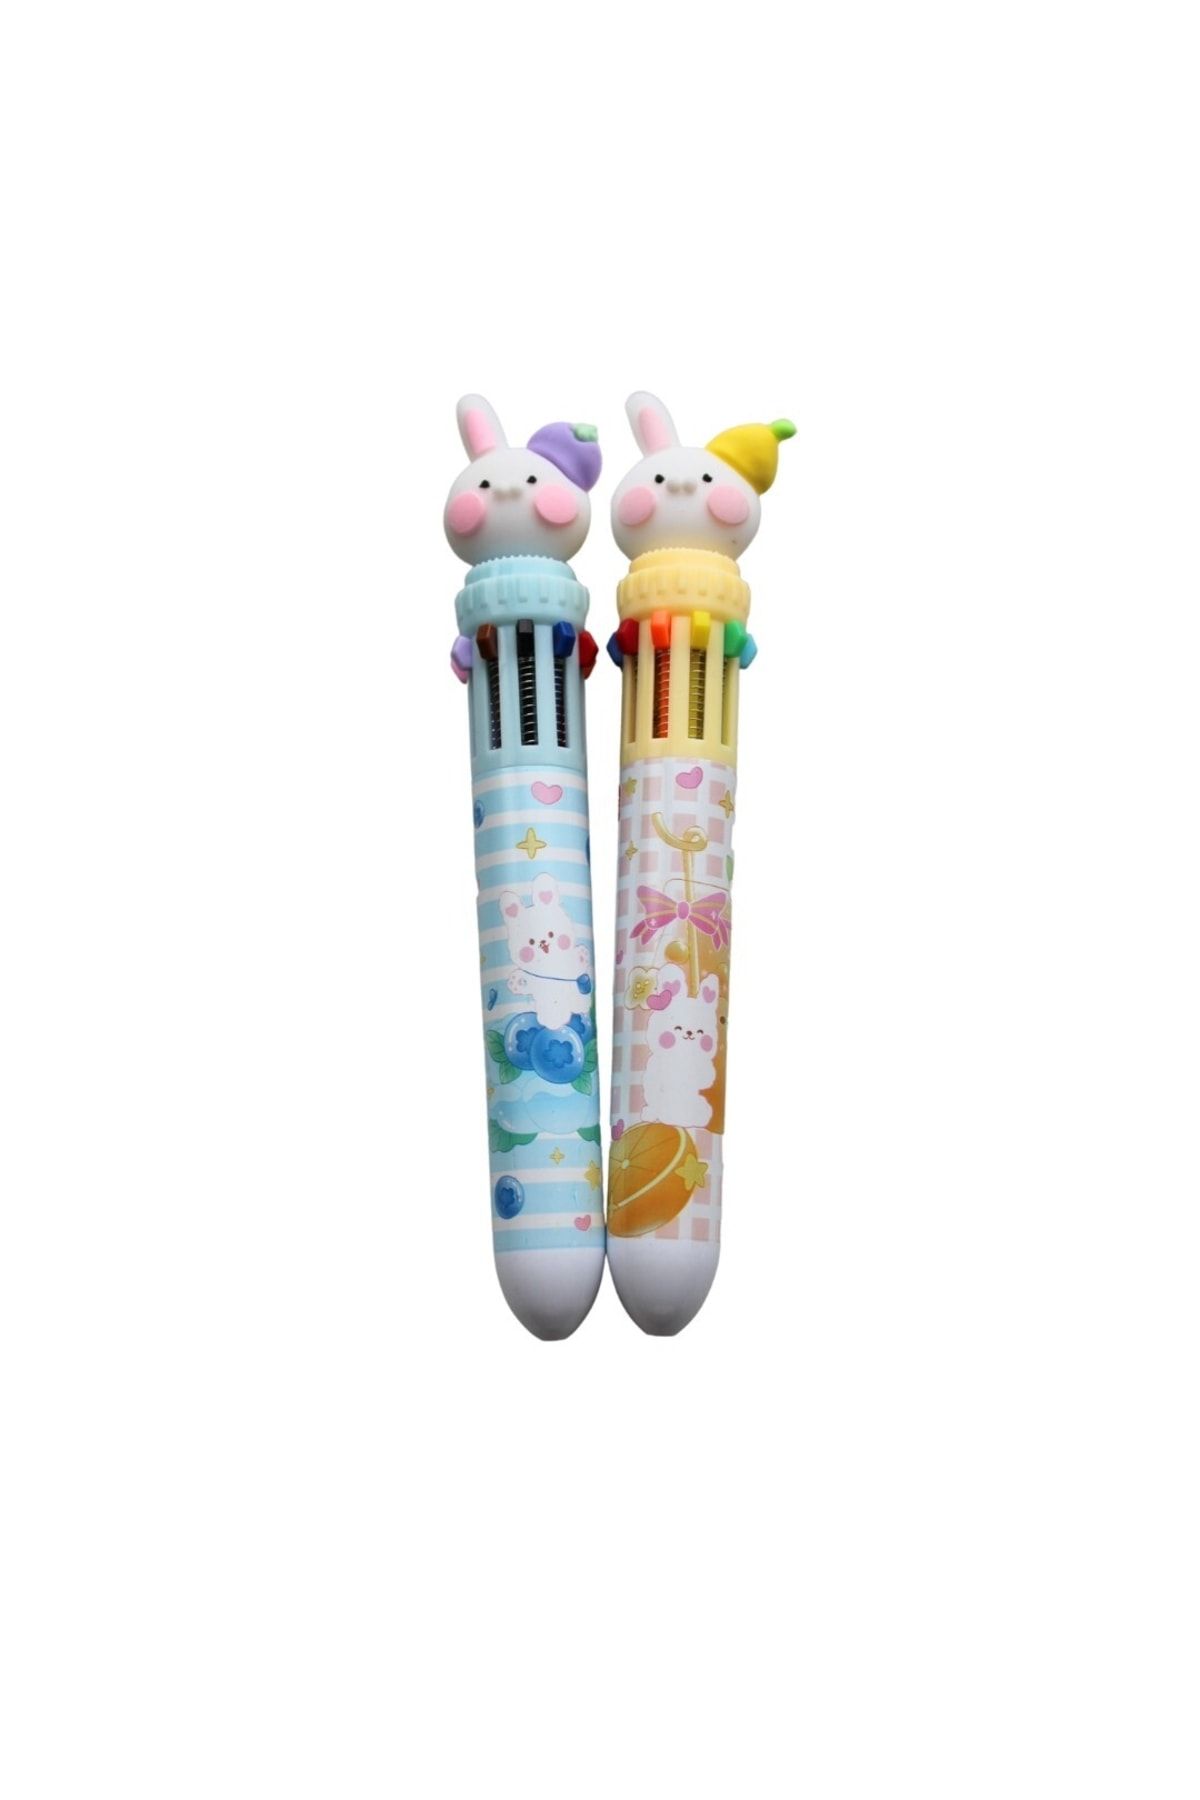 Miniso Taros 10 Renk Meyveli Tavşan Tükenmez Kalem